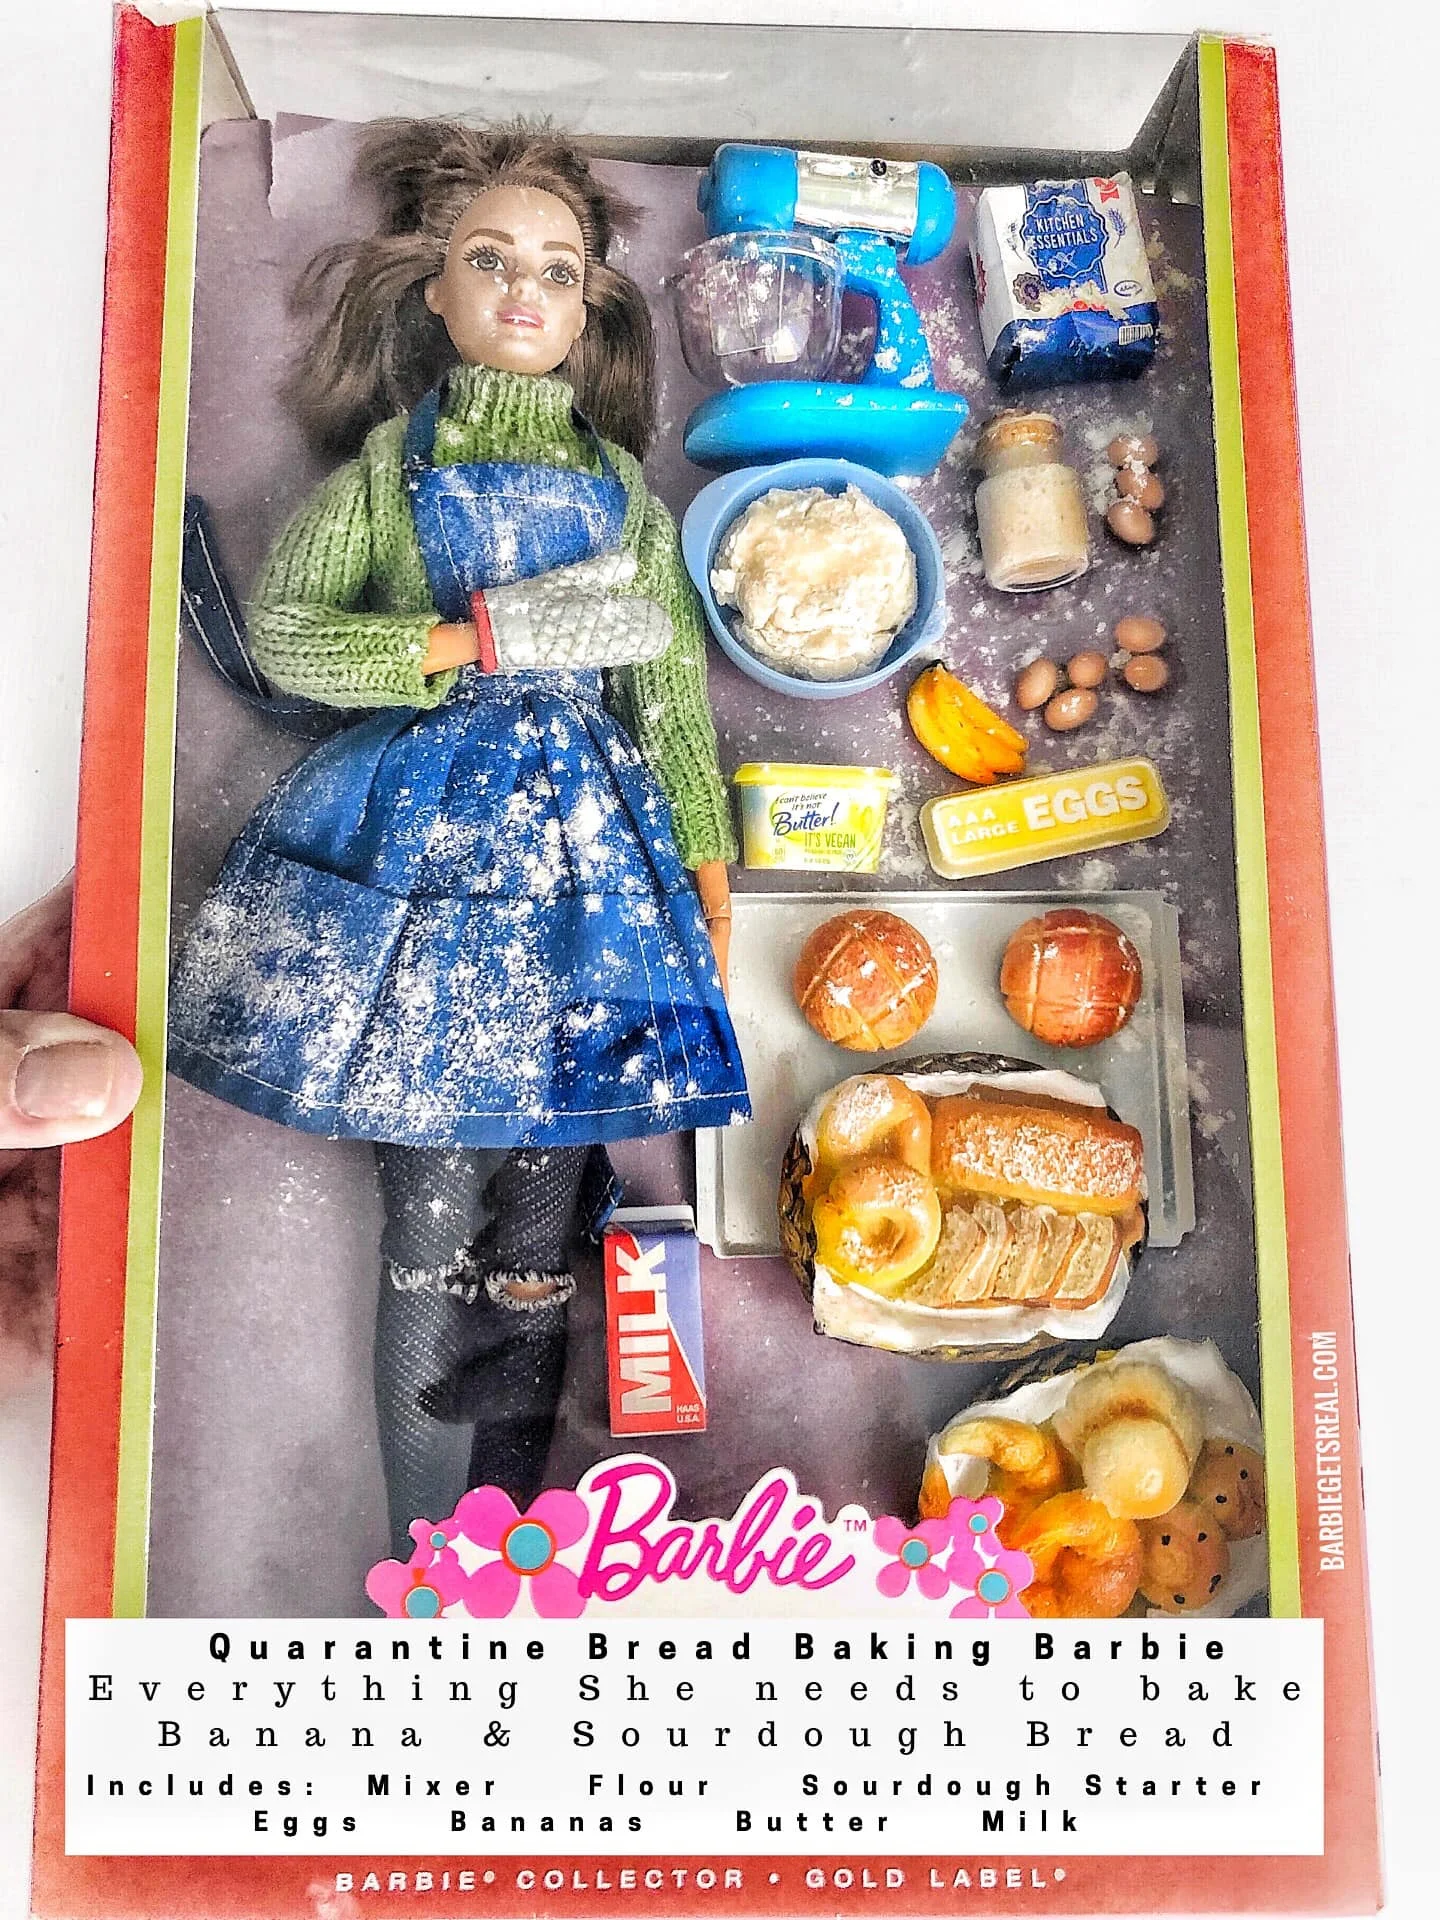 Женщина создала реалистичных кукол Барби, сидящих на карантине – такими их еще не видели - фото 479757